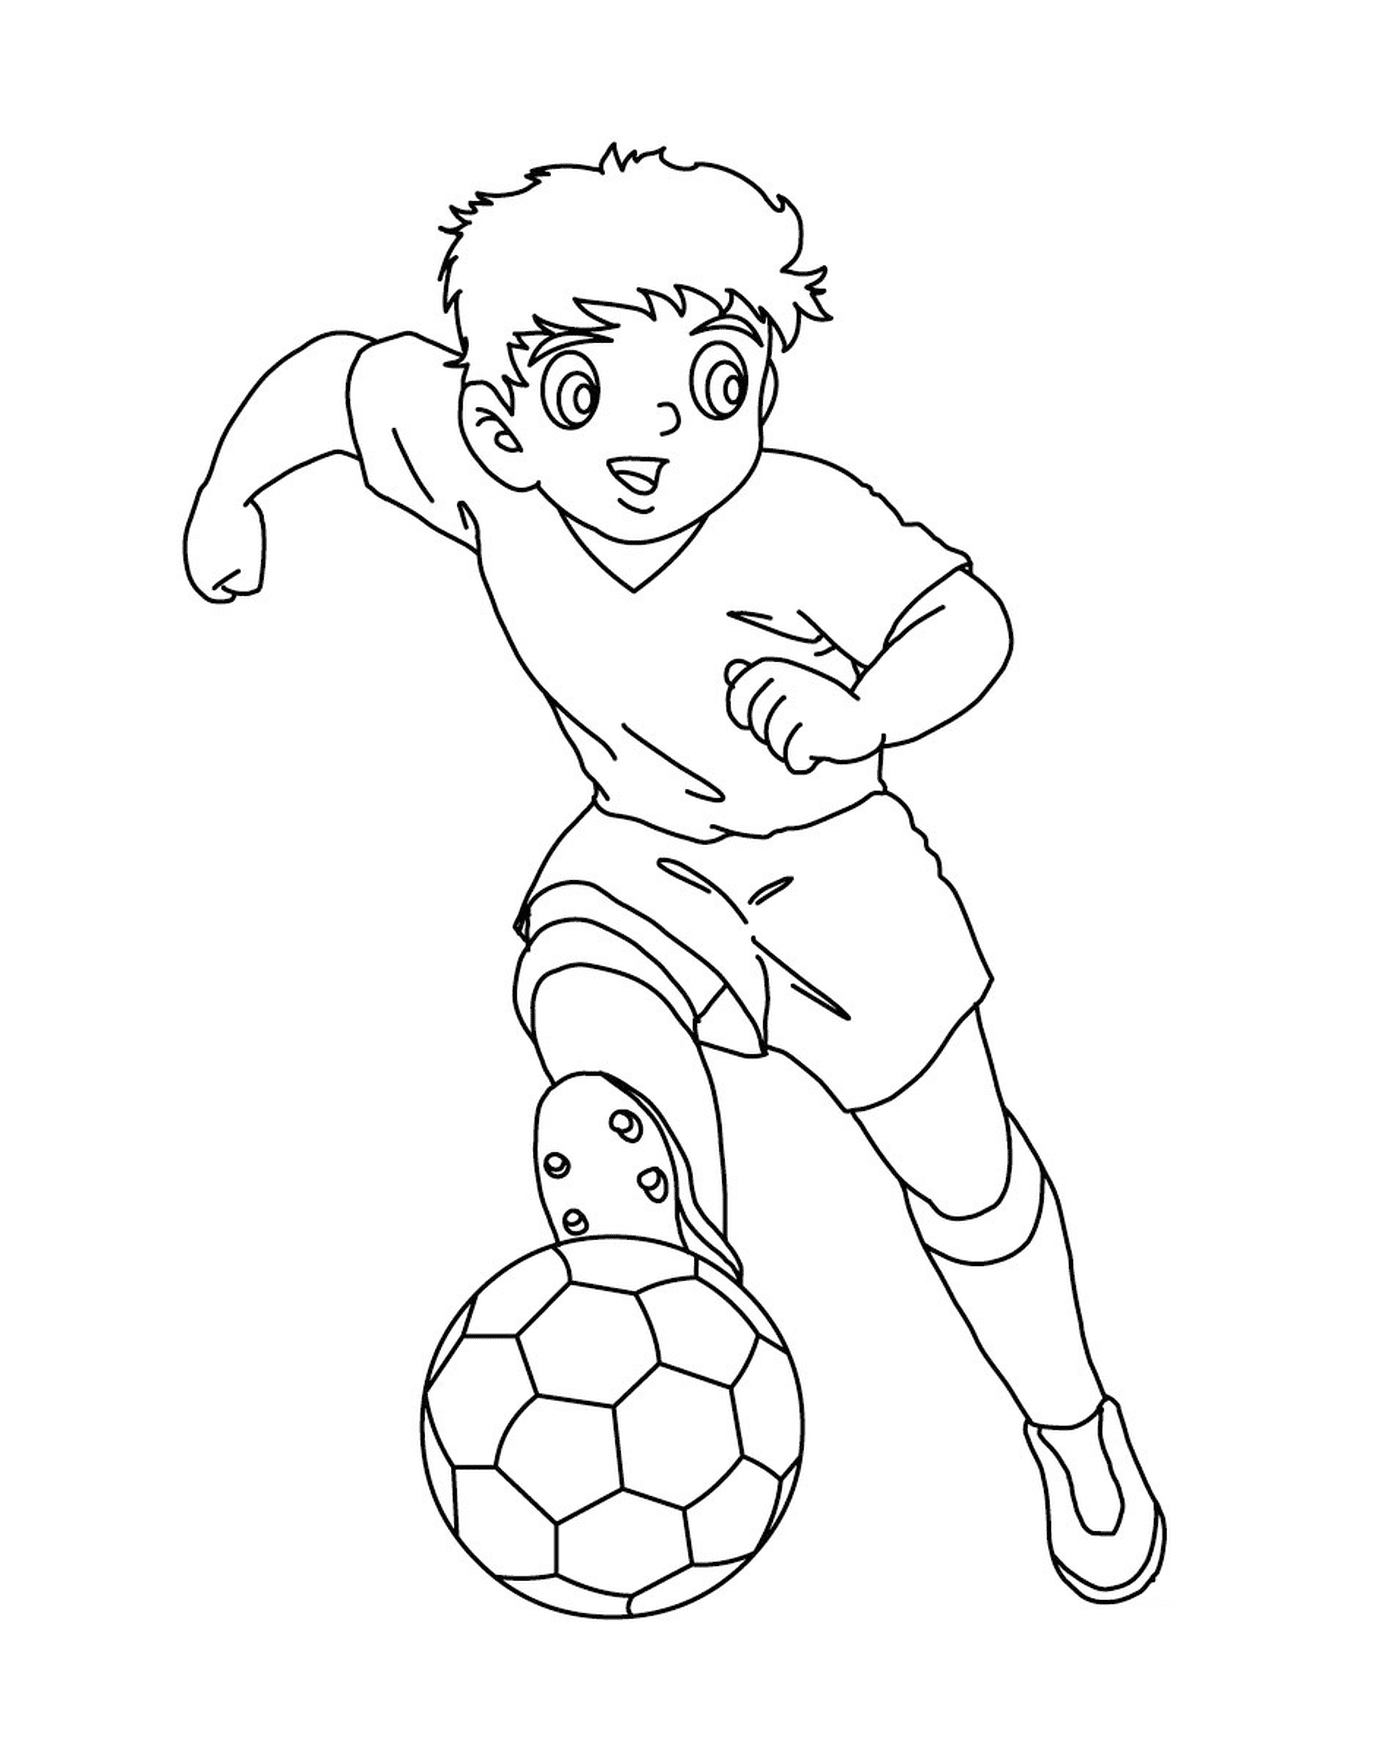   Garçon jouant au foot comme Capitaine Tsubasa 